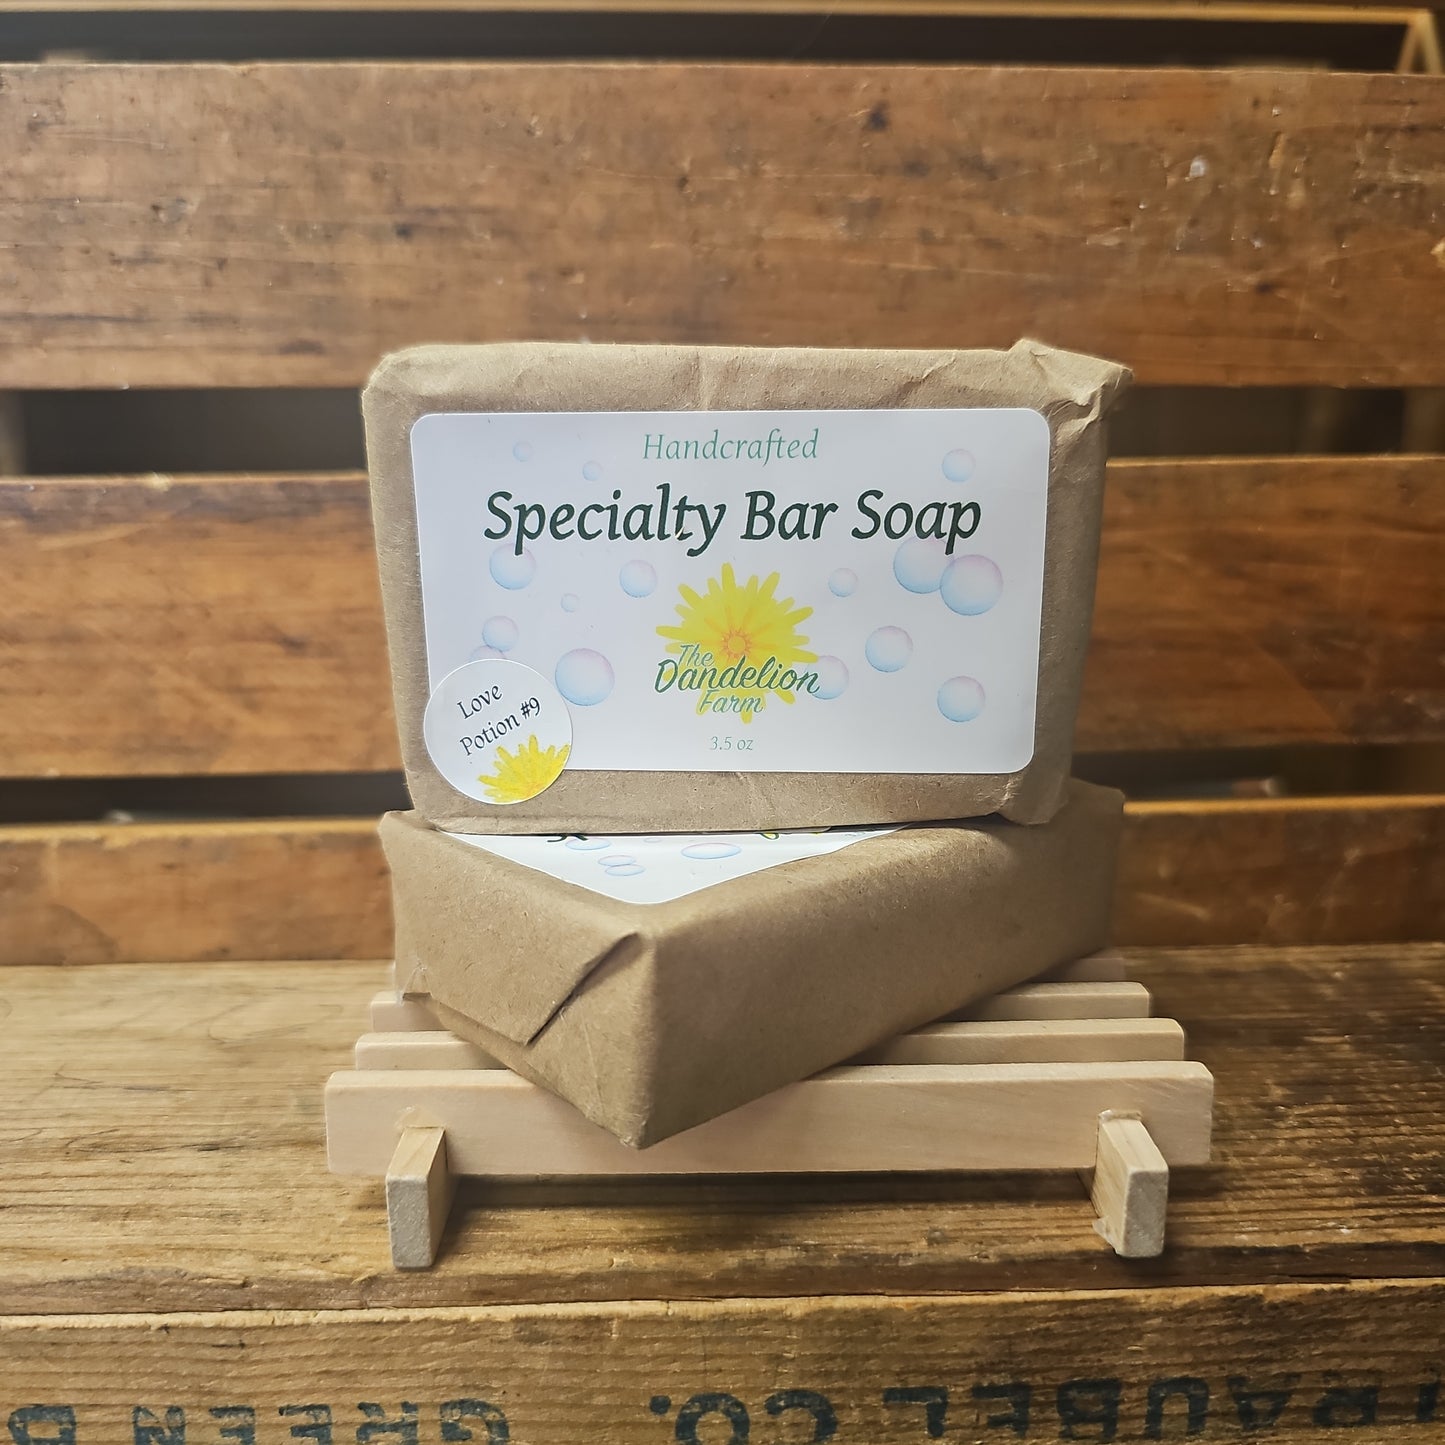 Specialty Bar Soap